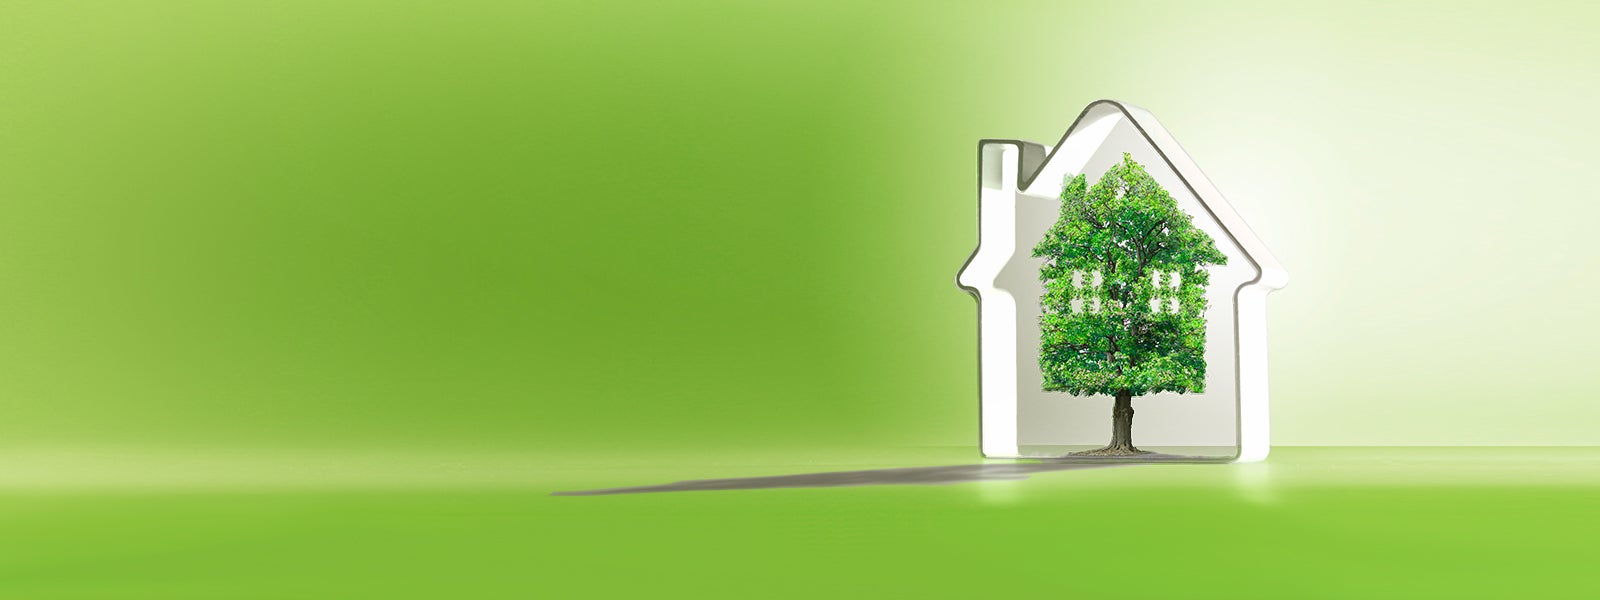 EED Visual: Es handelt sich um die grafische Darstellung eines Hauses in weiß auf einem grünlichen Hintergrund. In der Mitte des Hauses steht ein sattgrüner Baum, der ebenfalls die Form eines Hauses hat.